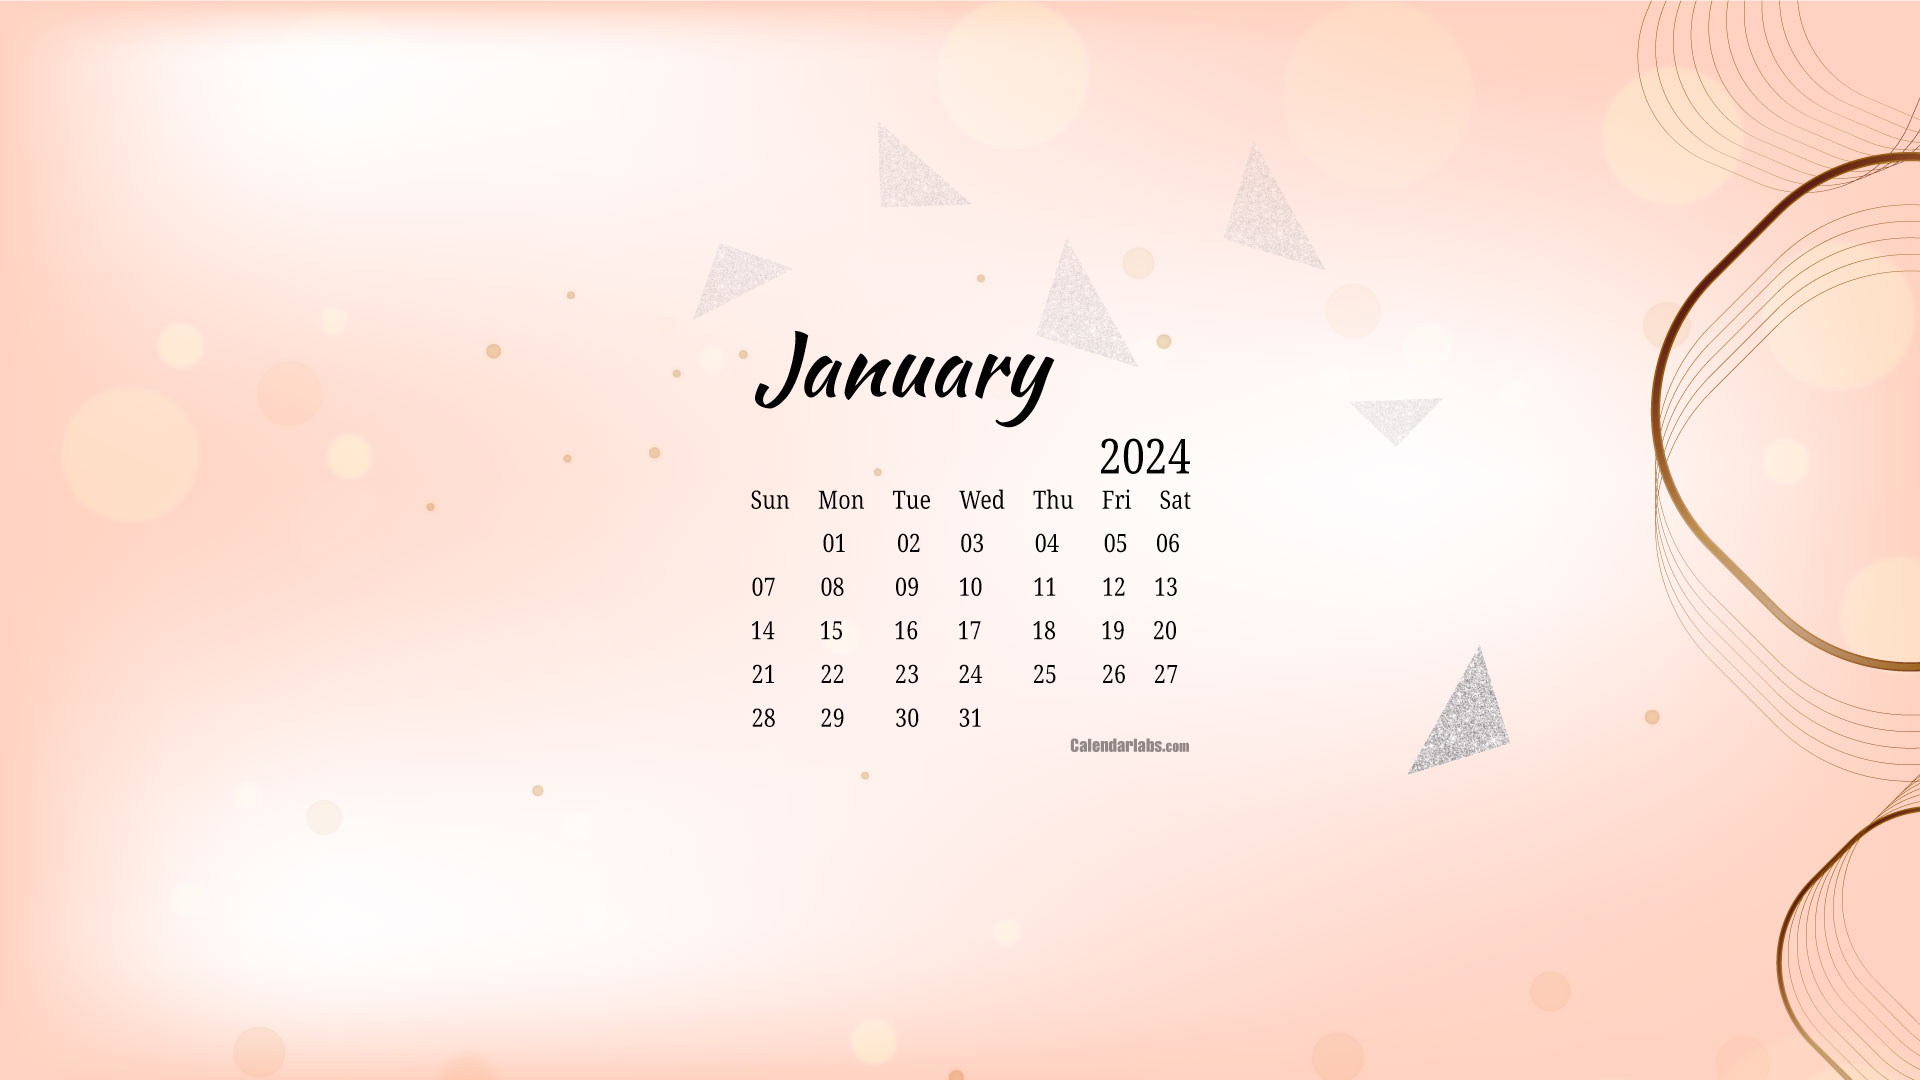 January 2024 Calendar Wallpaper Computer Sydel Fanechka